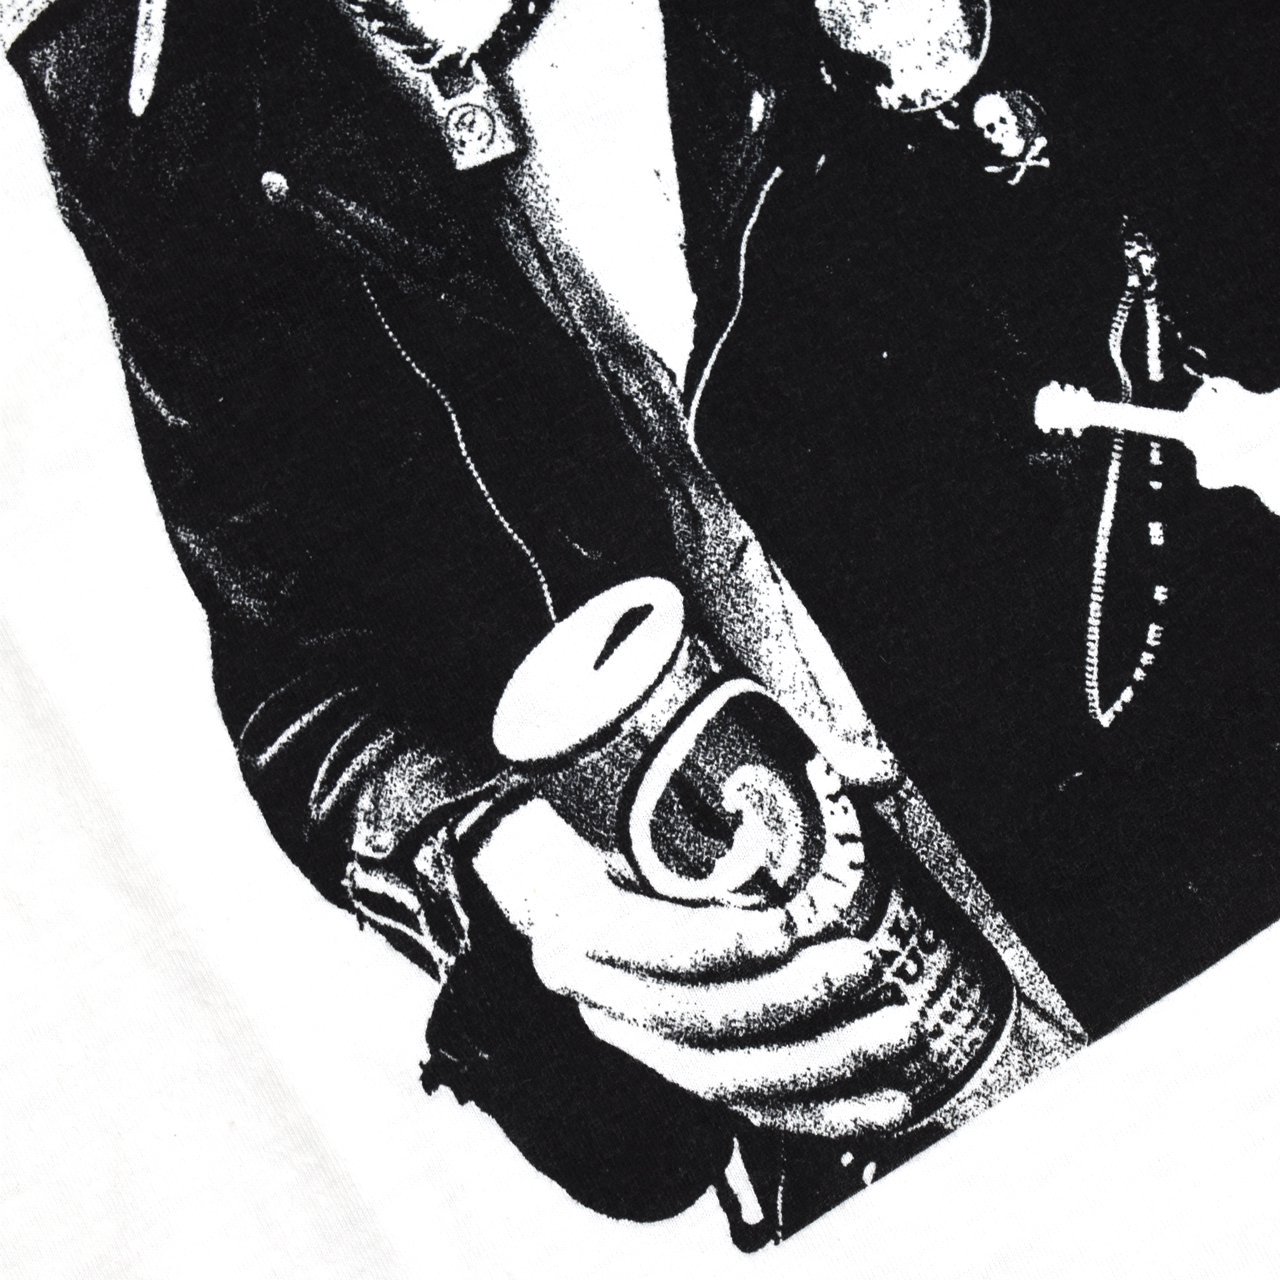 HYSTERIC GLAMOUR(ヒステリックグラマー)
SID VICIOUS(シド・ヴィシャス)
DENNIS MORRIS
半袖Tシャツ